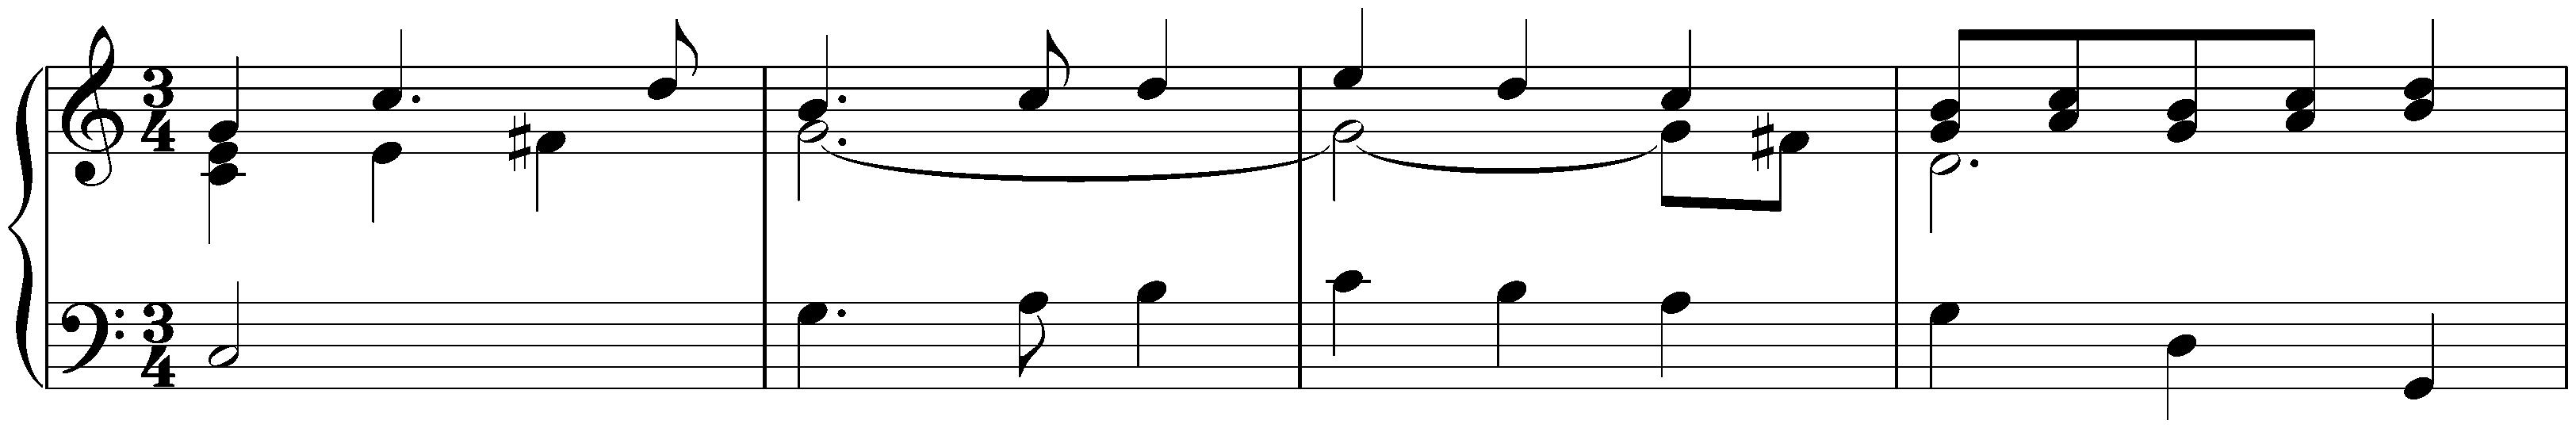 Suite in C major, HWV 443; 4. Sarabande